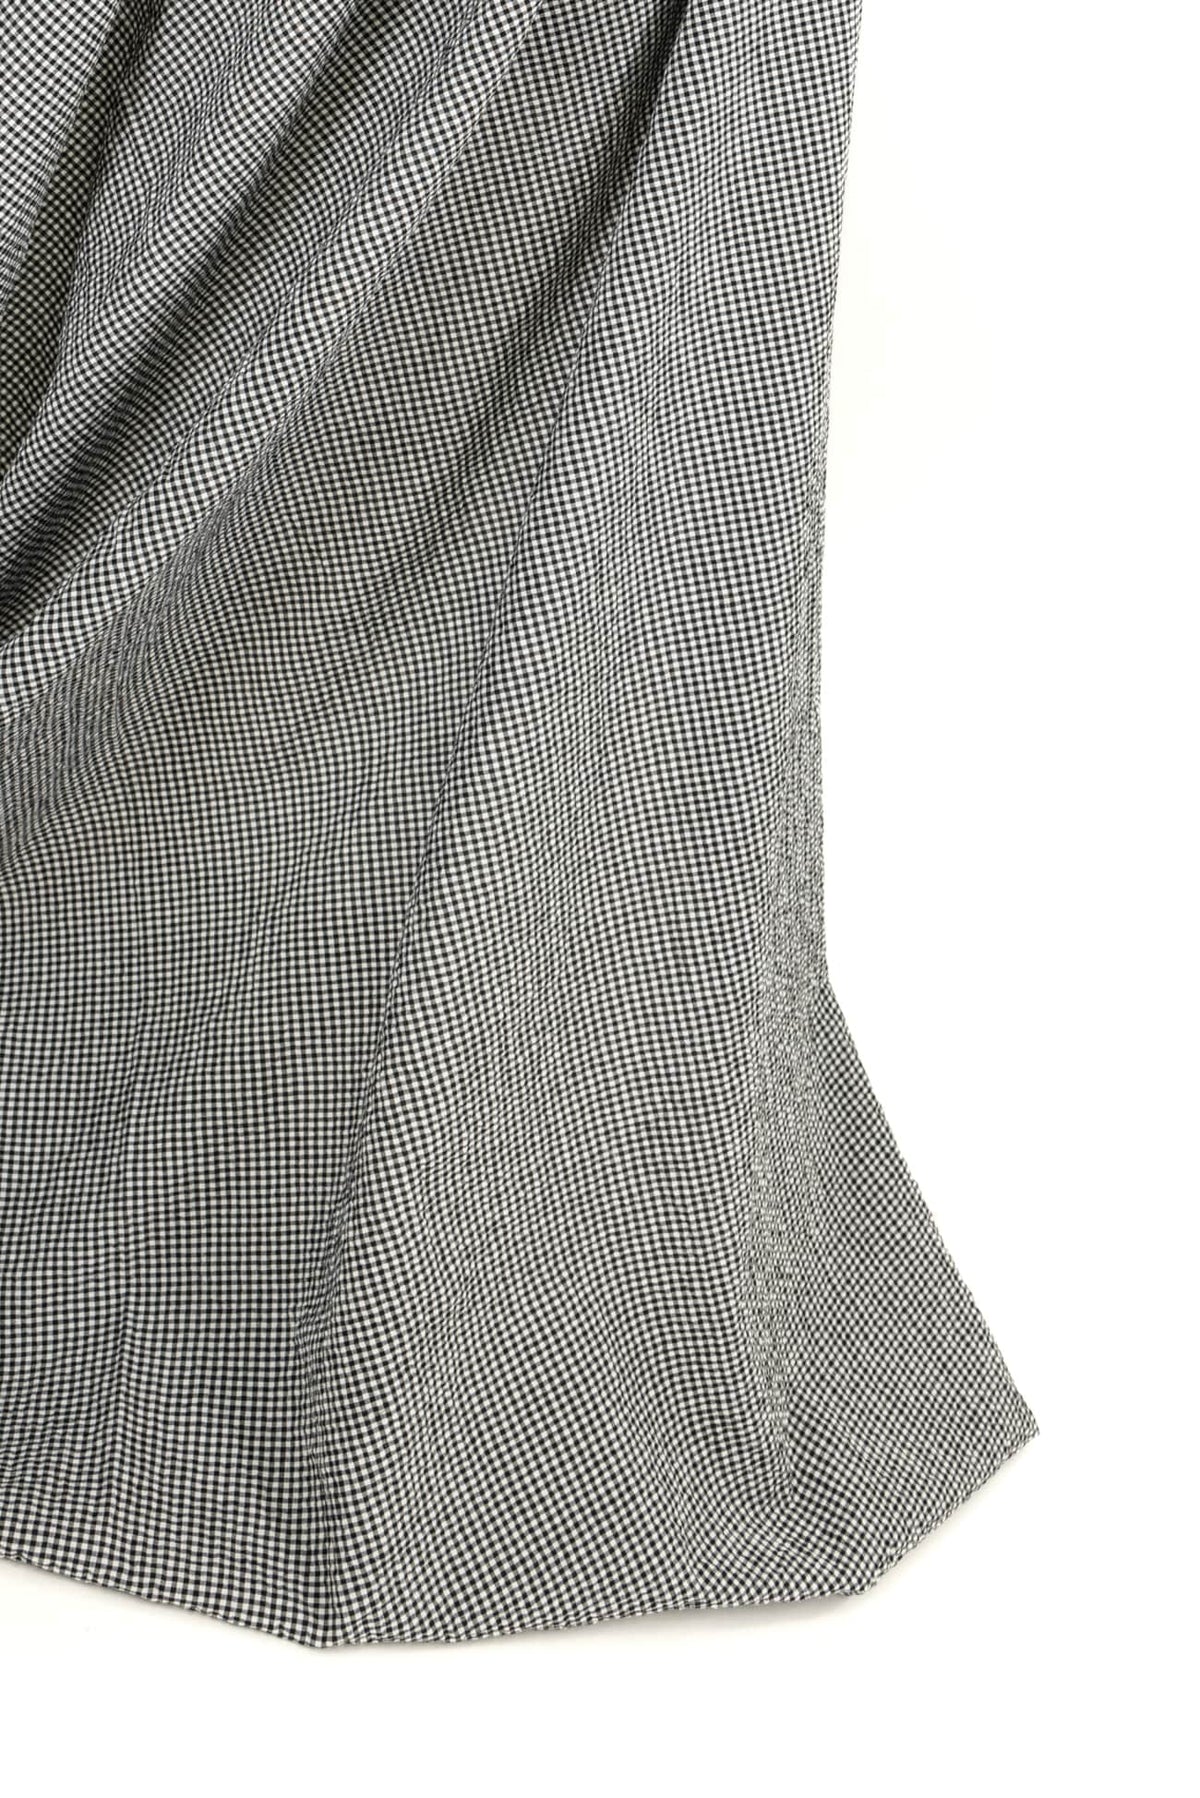 Golightly Italian Cotton Seersucker - Marcy Tilton Fabrics